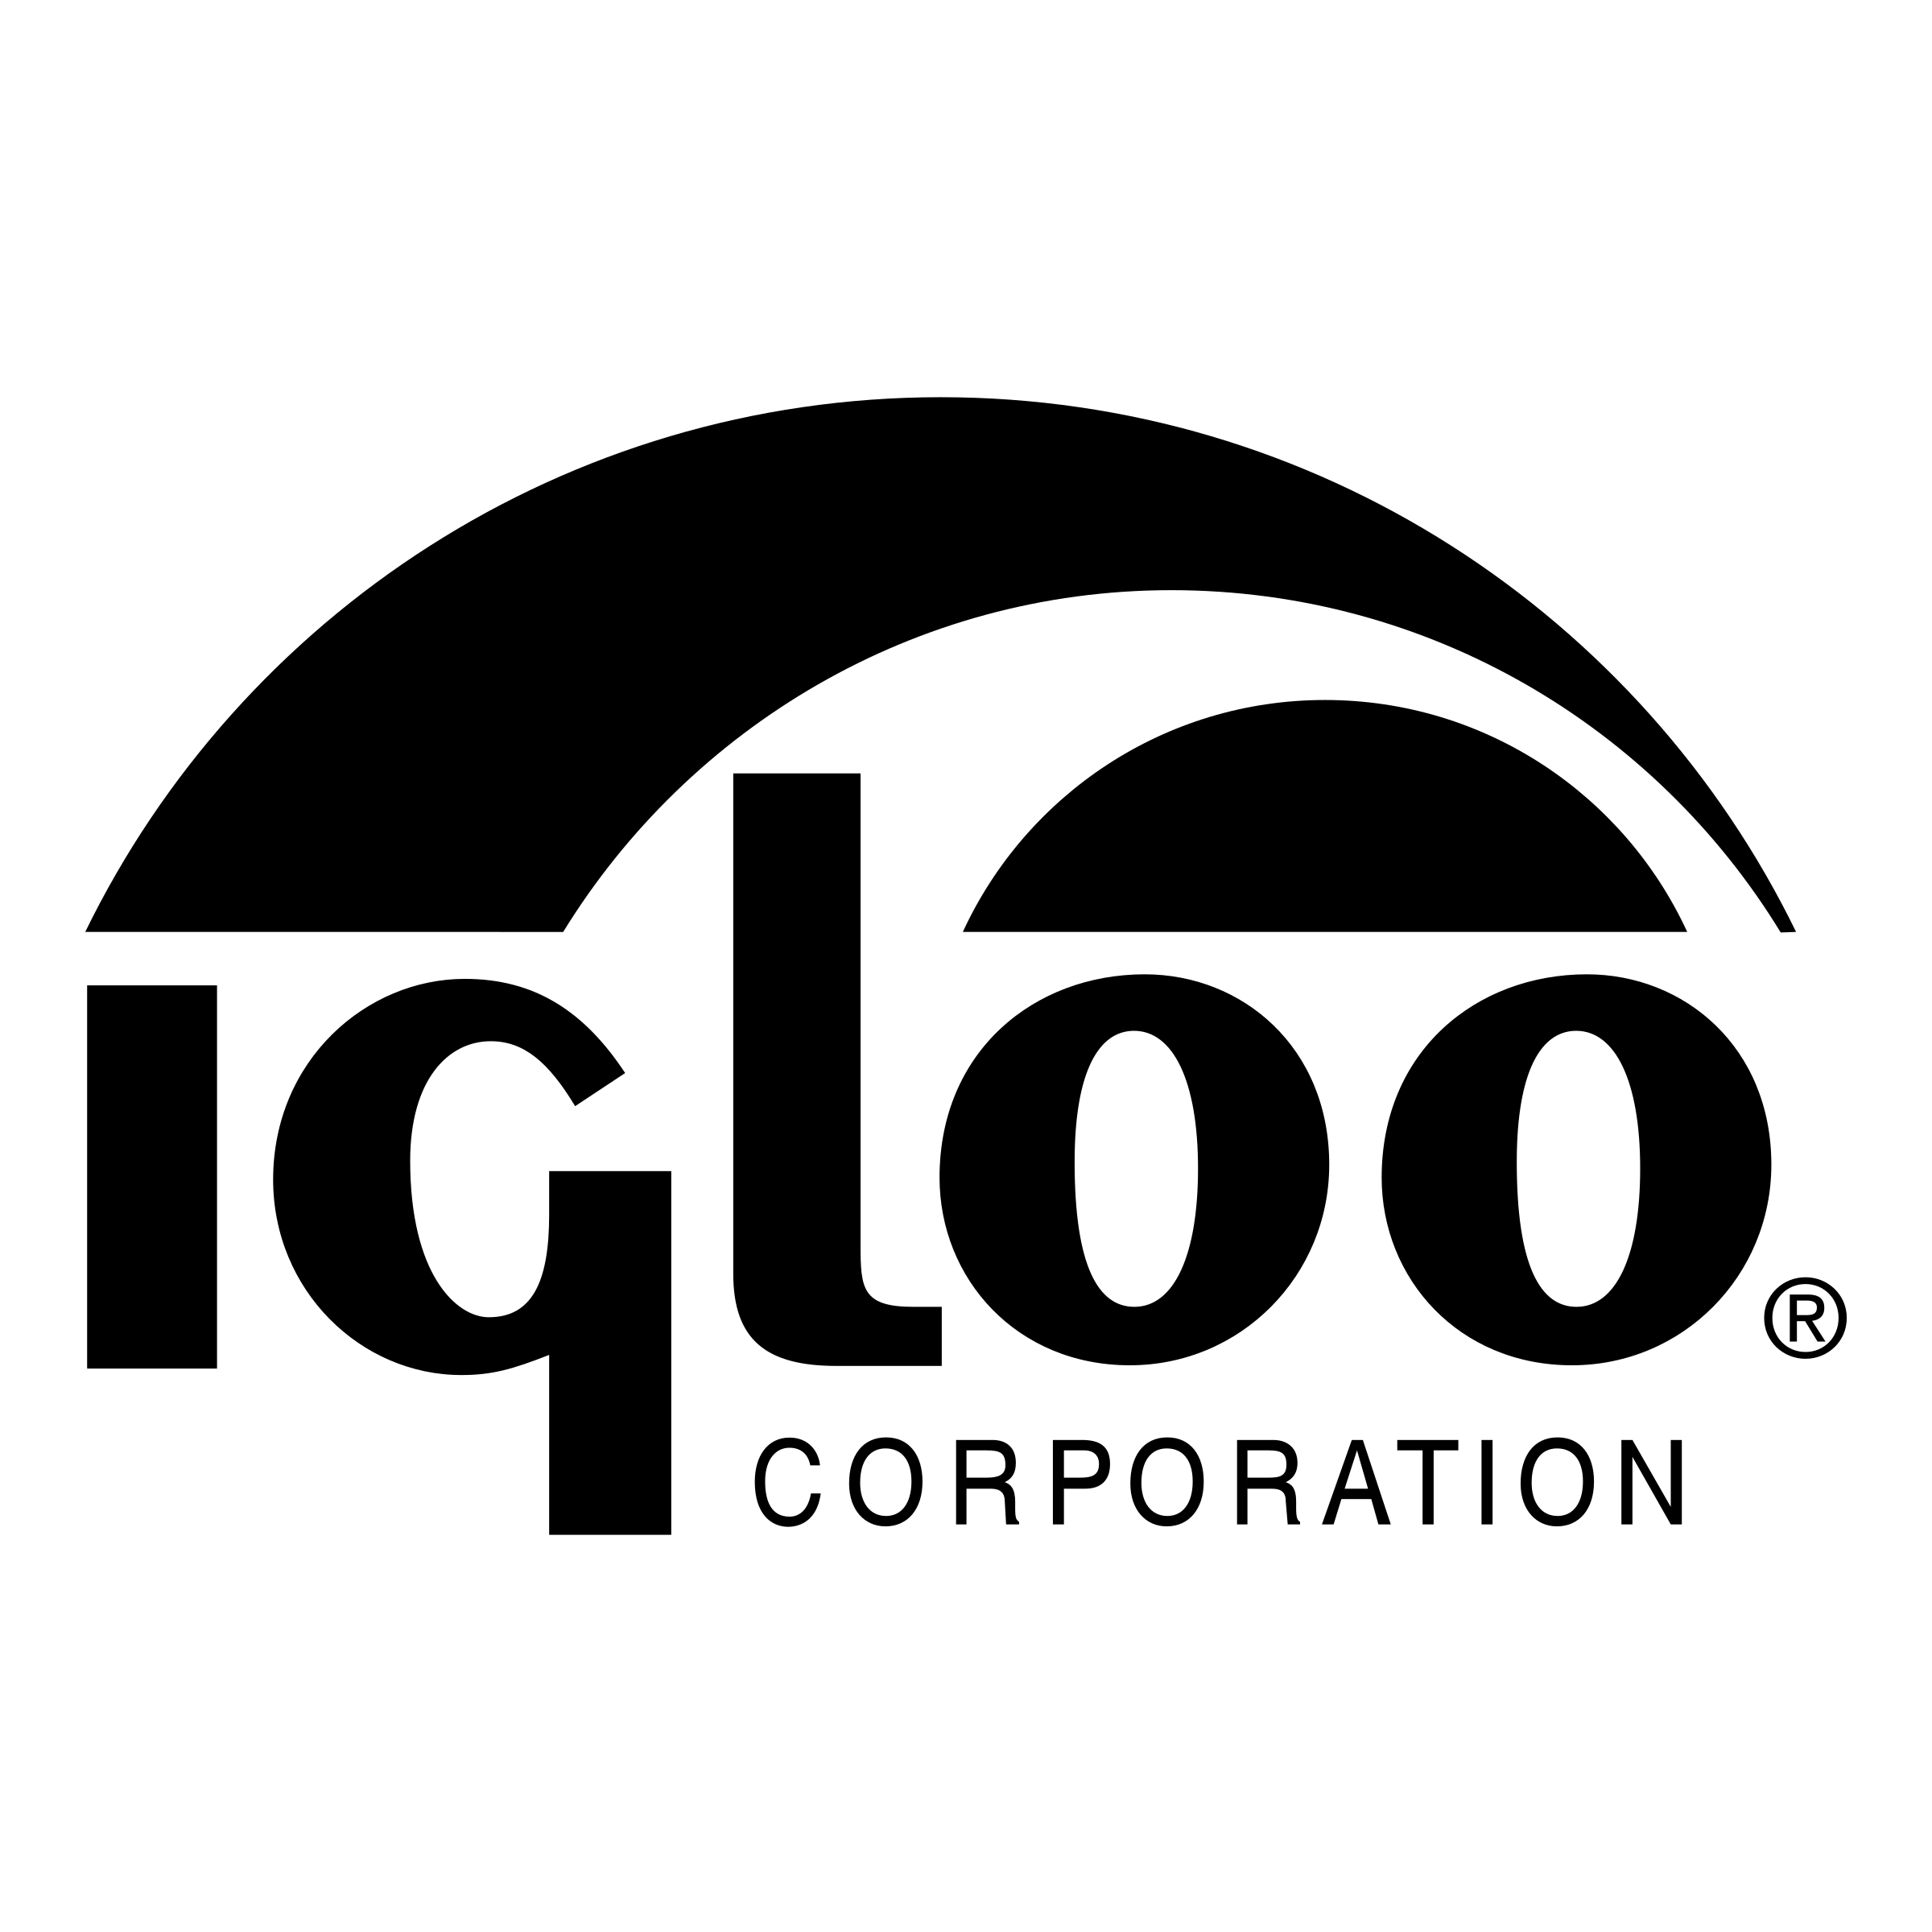 Igloo Logo - Igloo Logo PNG Transparent & SVG Vector